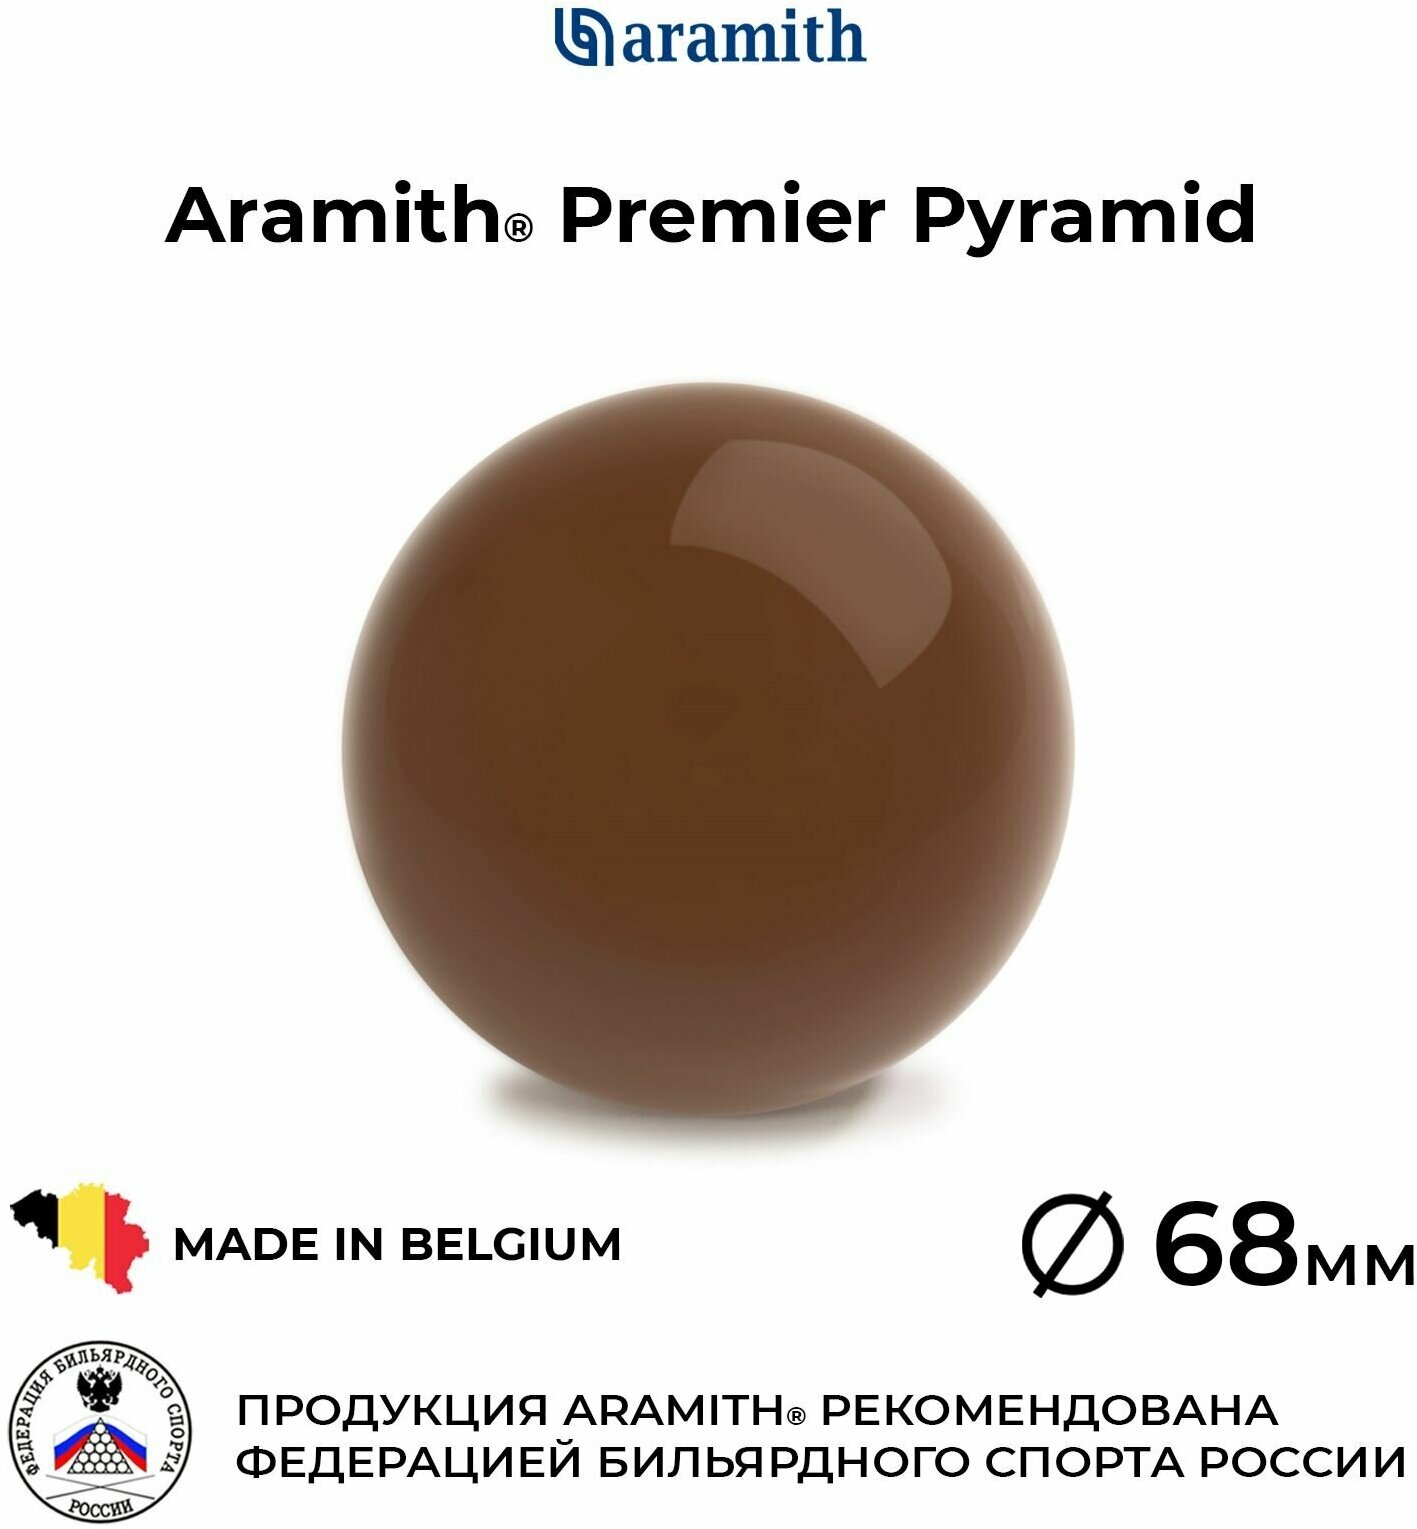 Бильярдный шар-биток 68 мм Арамит Премьер Пирамид / Aramith Premier Pyramid 68 мм коричнево-желтый 1 шт.